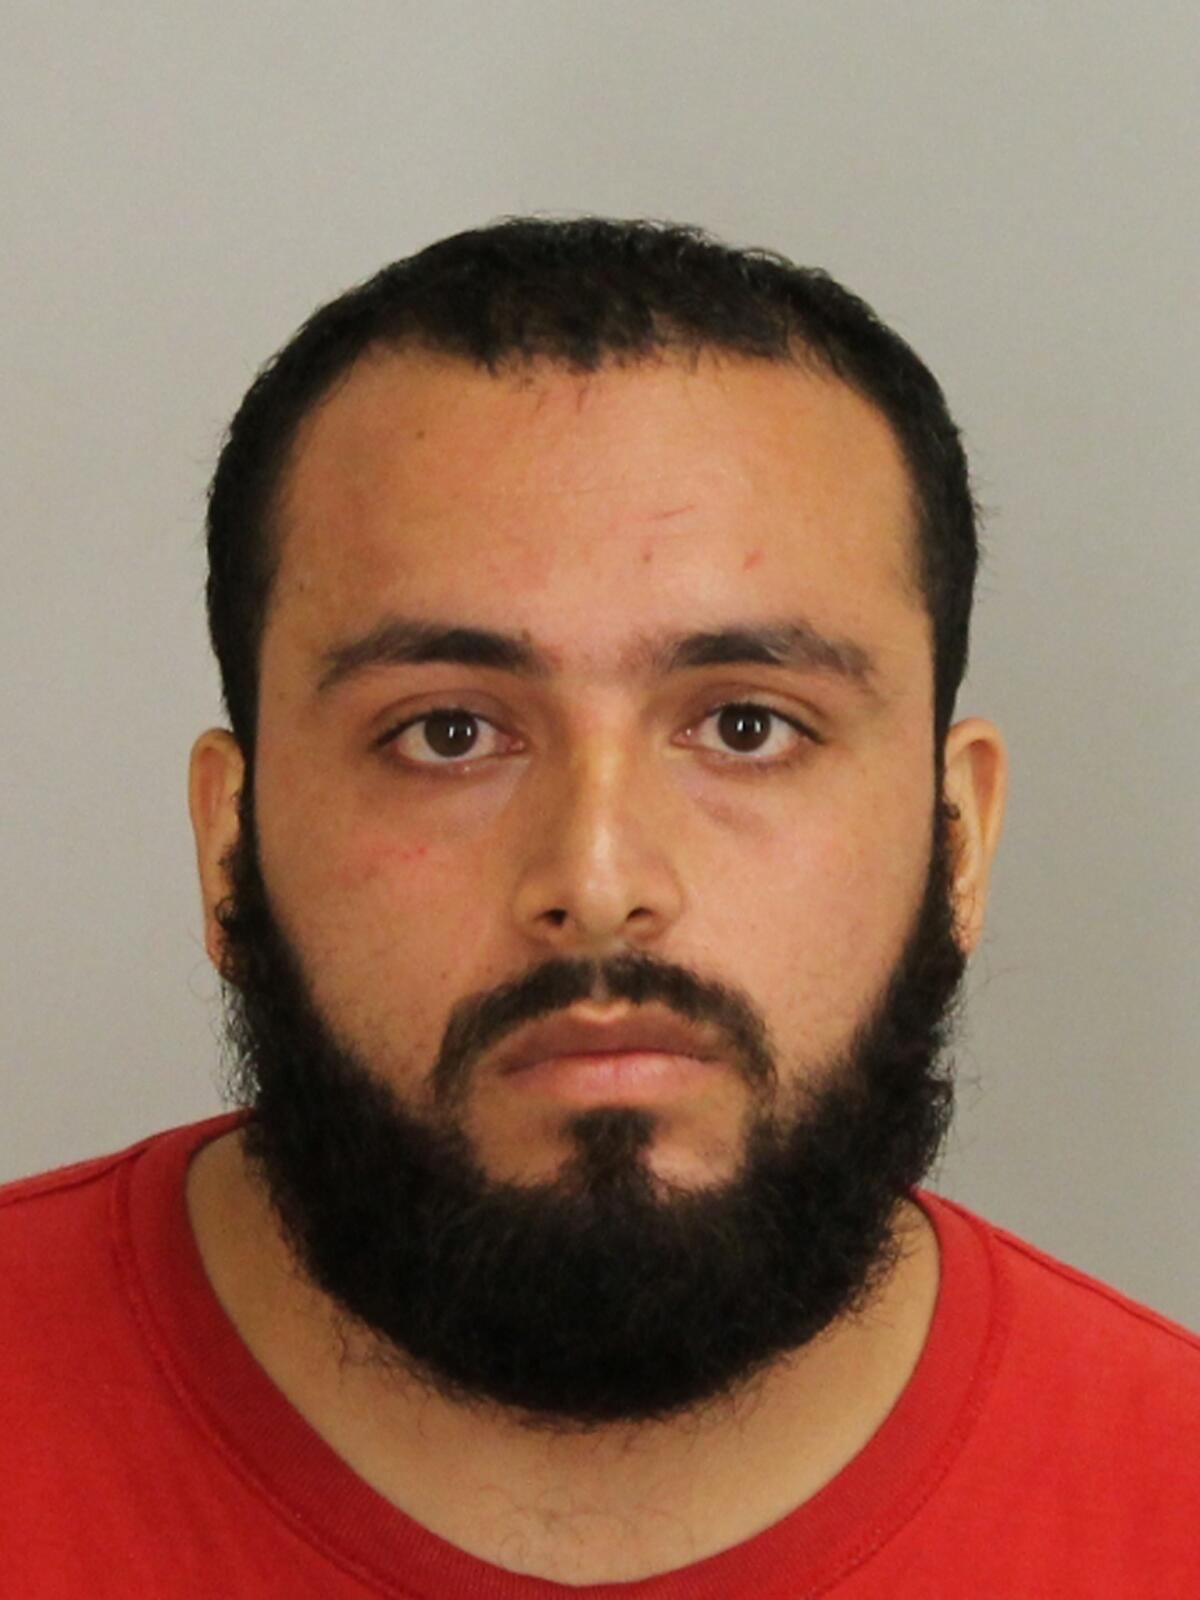 En esta imagen de archivo, tomada en septiembre de 2016 y distribuida por la fiscalía del condado de Union, muestra a Ahmad Khan Rahami, detenido como sospechoso de colocar bombas en Nueva York y New Jersey. (Fiscalía del condado de Union via AP, archivo)